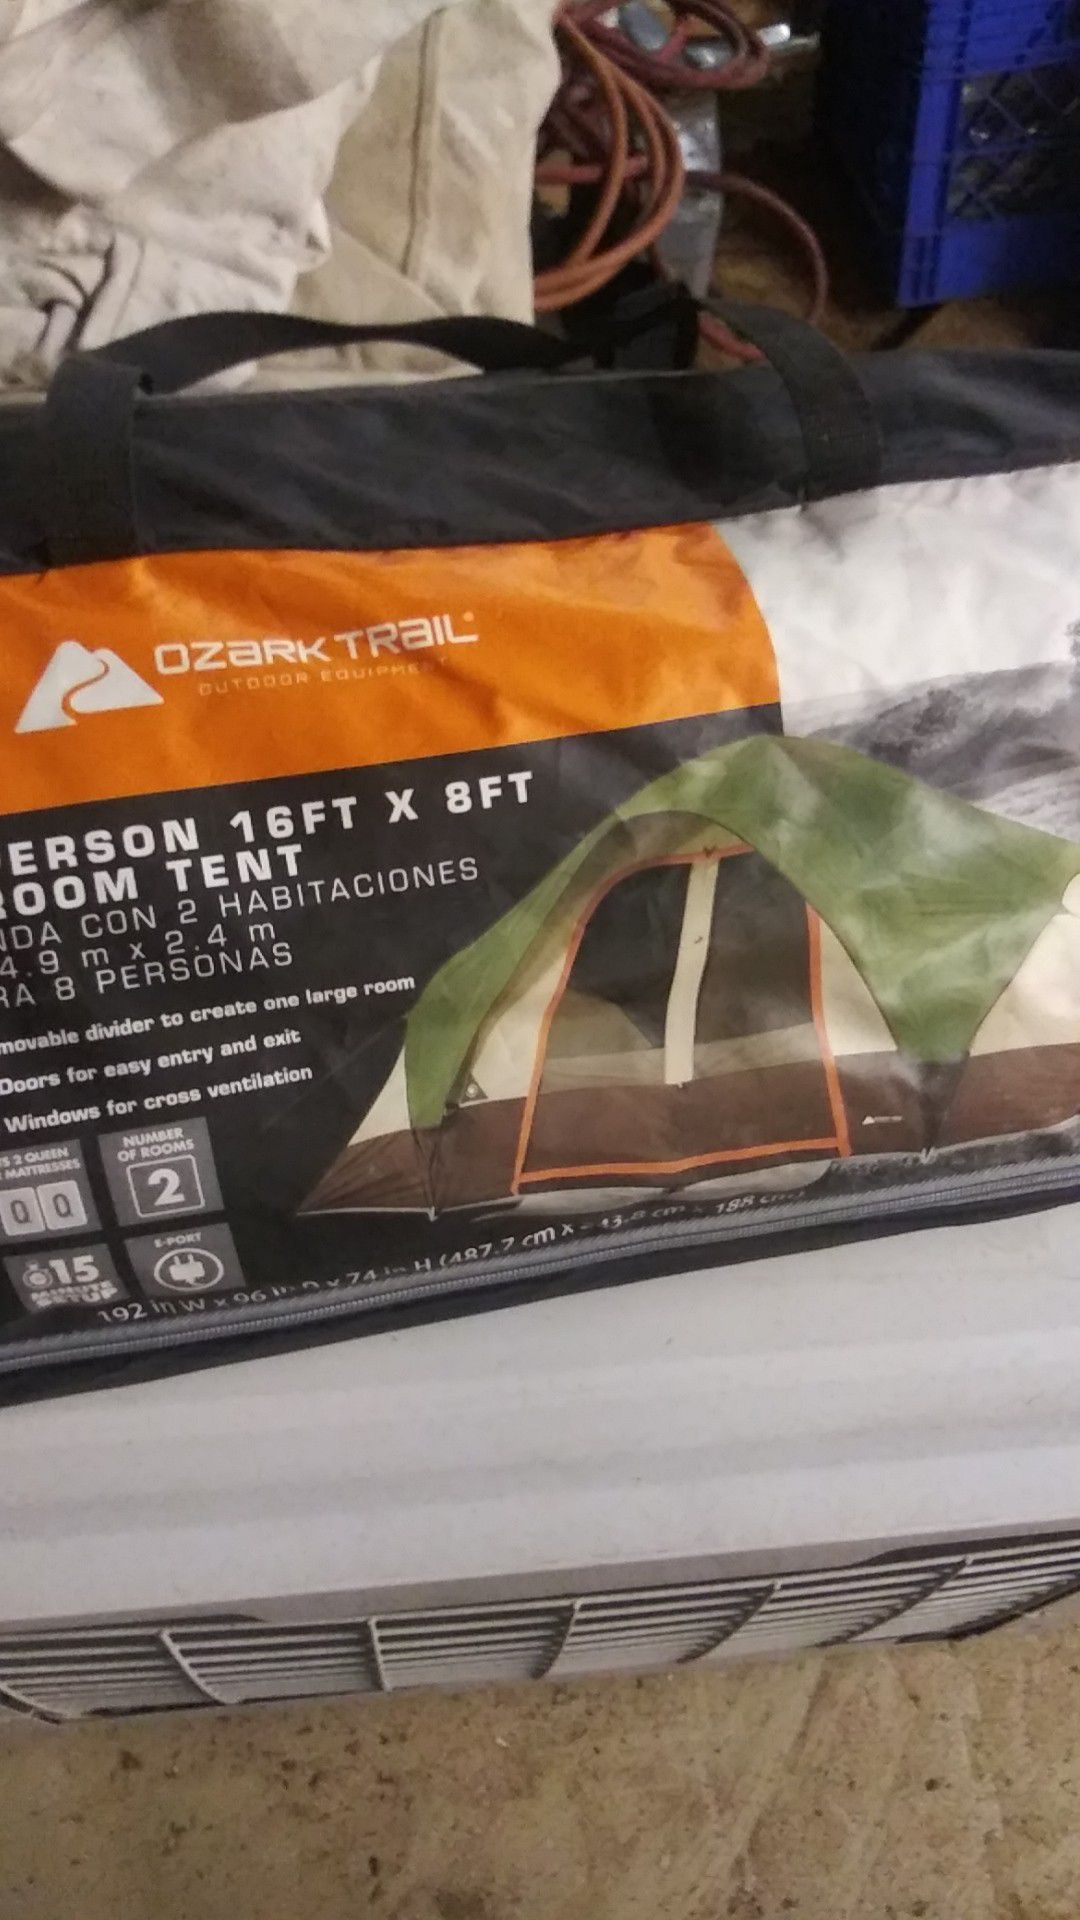 Ozark trail 8 person tent